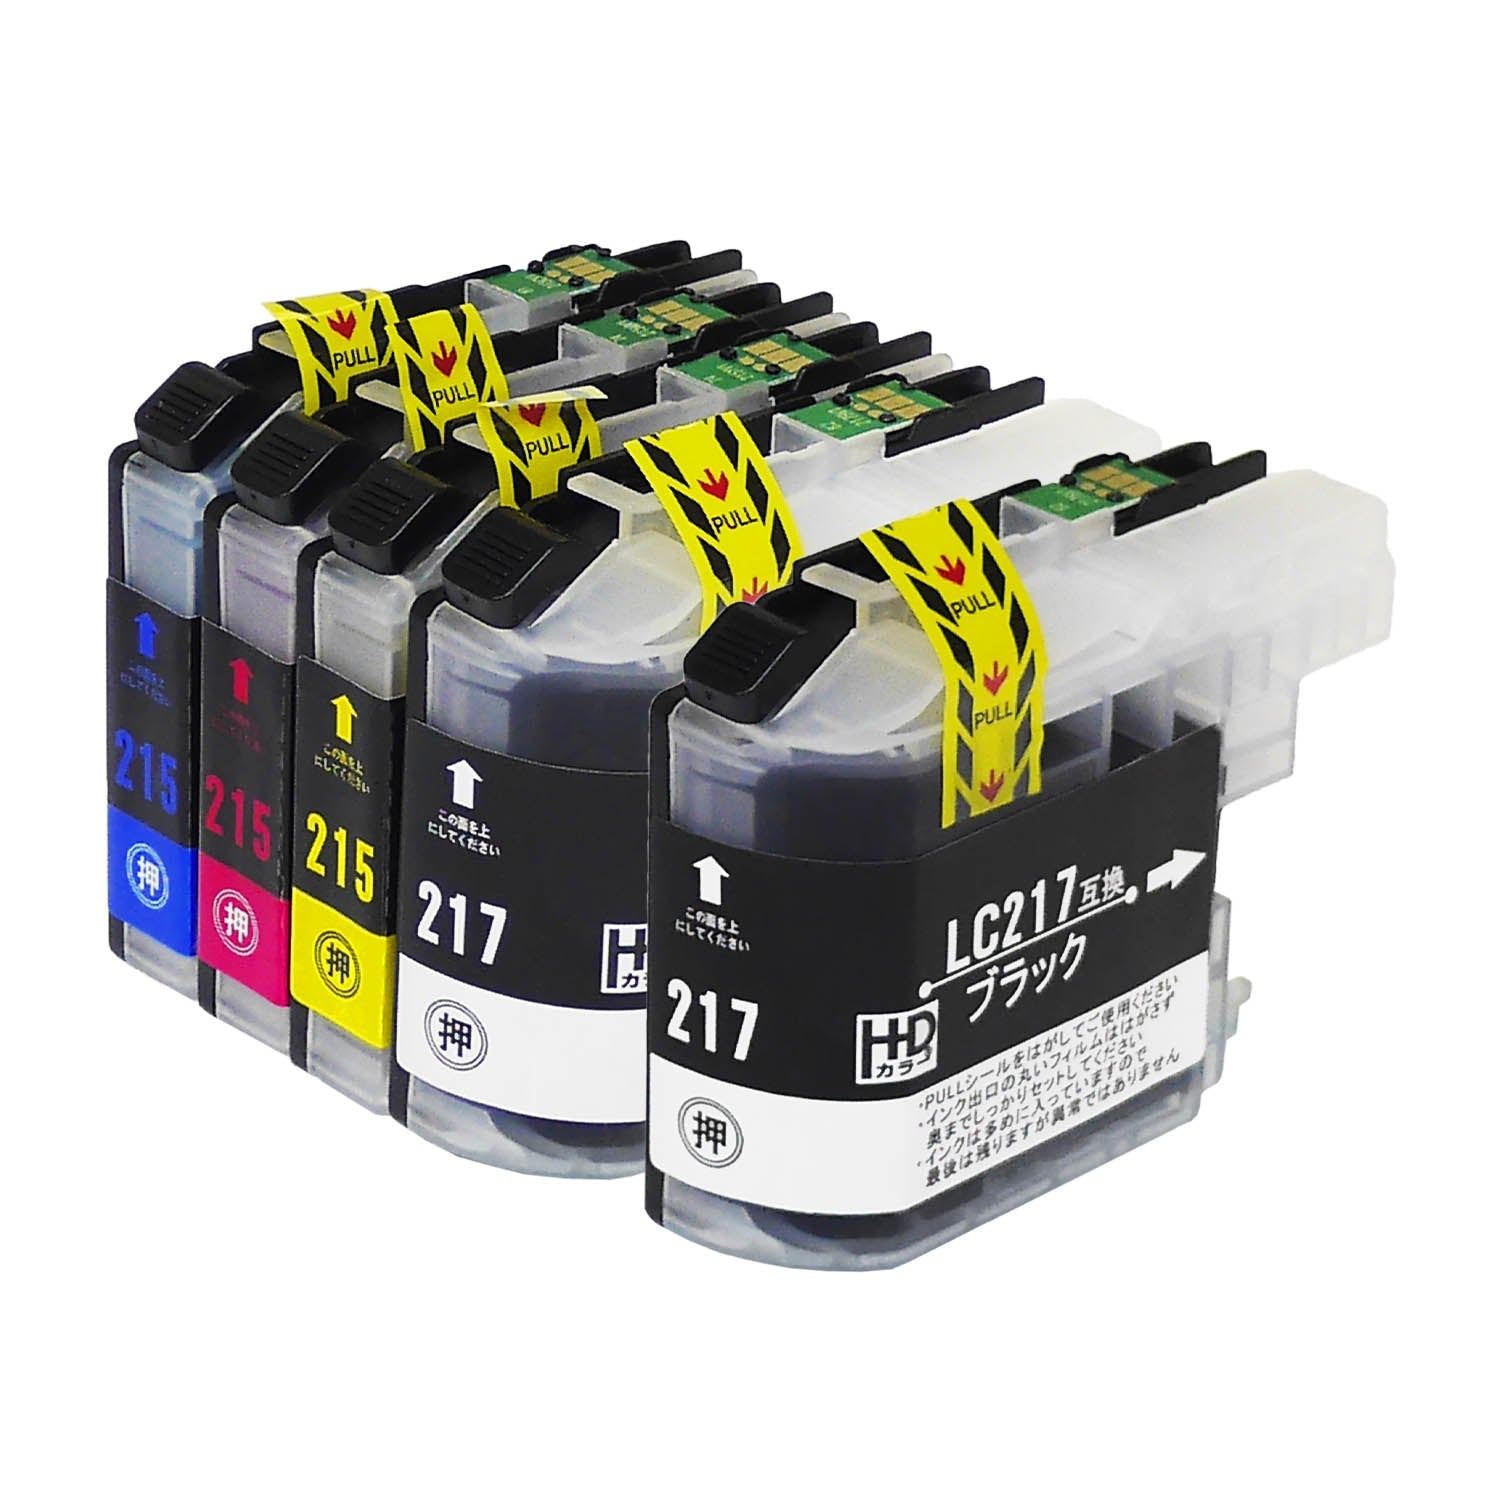 ブラザー用 LC217/215-4PK 互換インク 4色セット